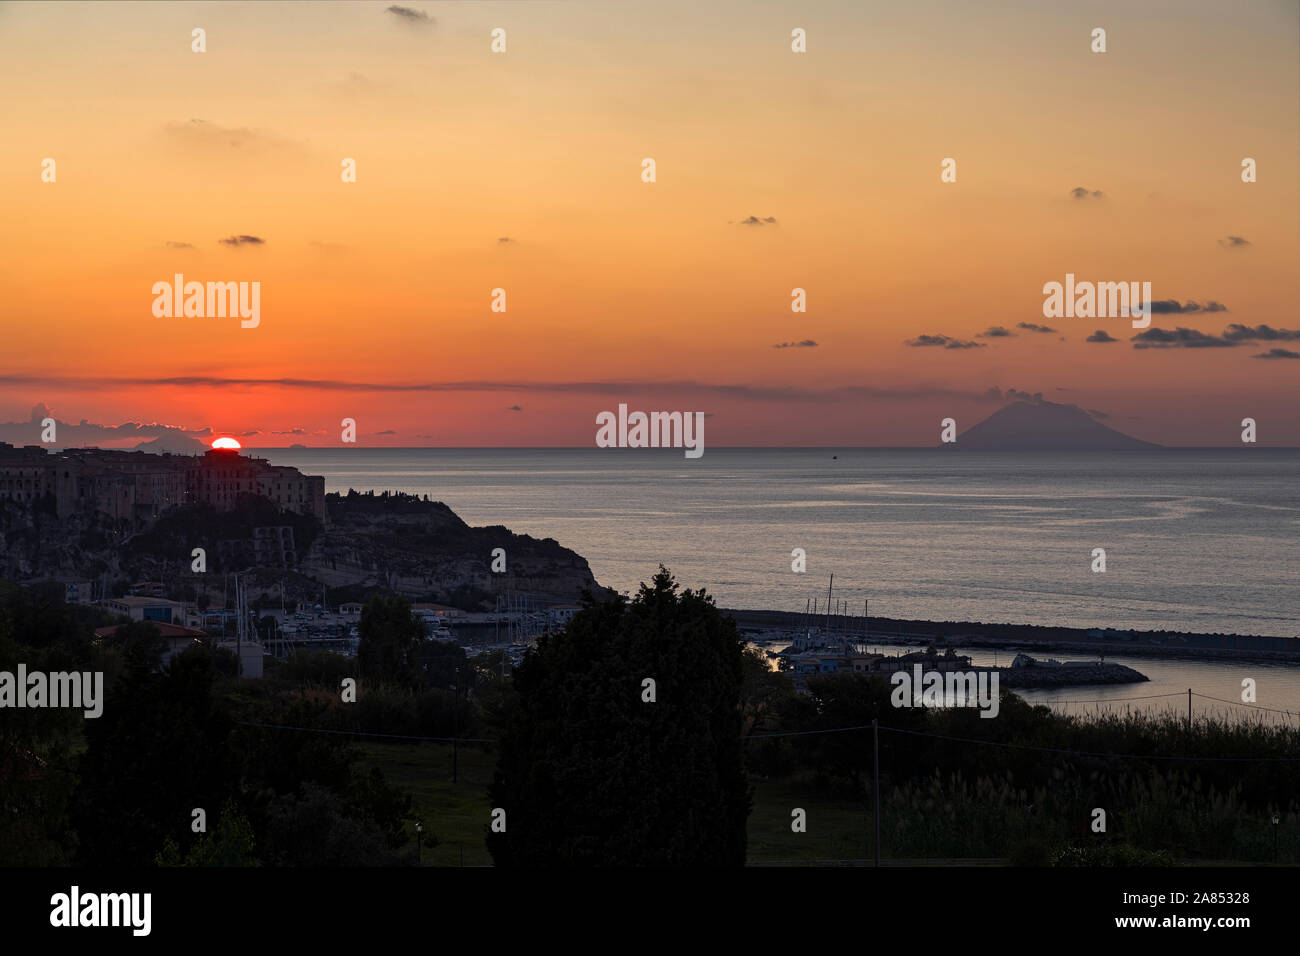 Dritte in Folge von fünf Bilder von Sonnenuntergang über dem Meer in Tropea Italien Stockfoto